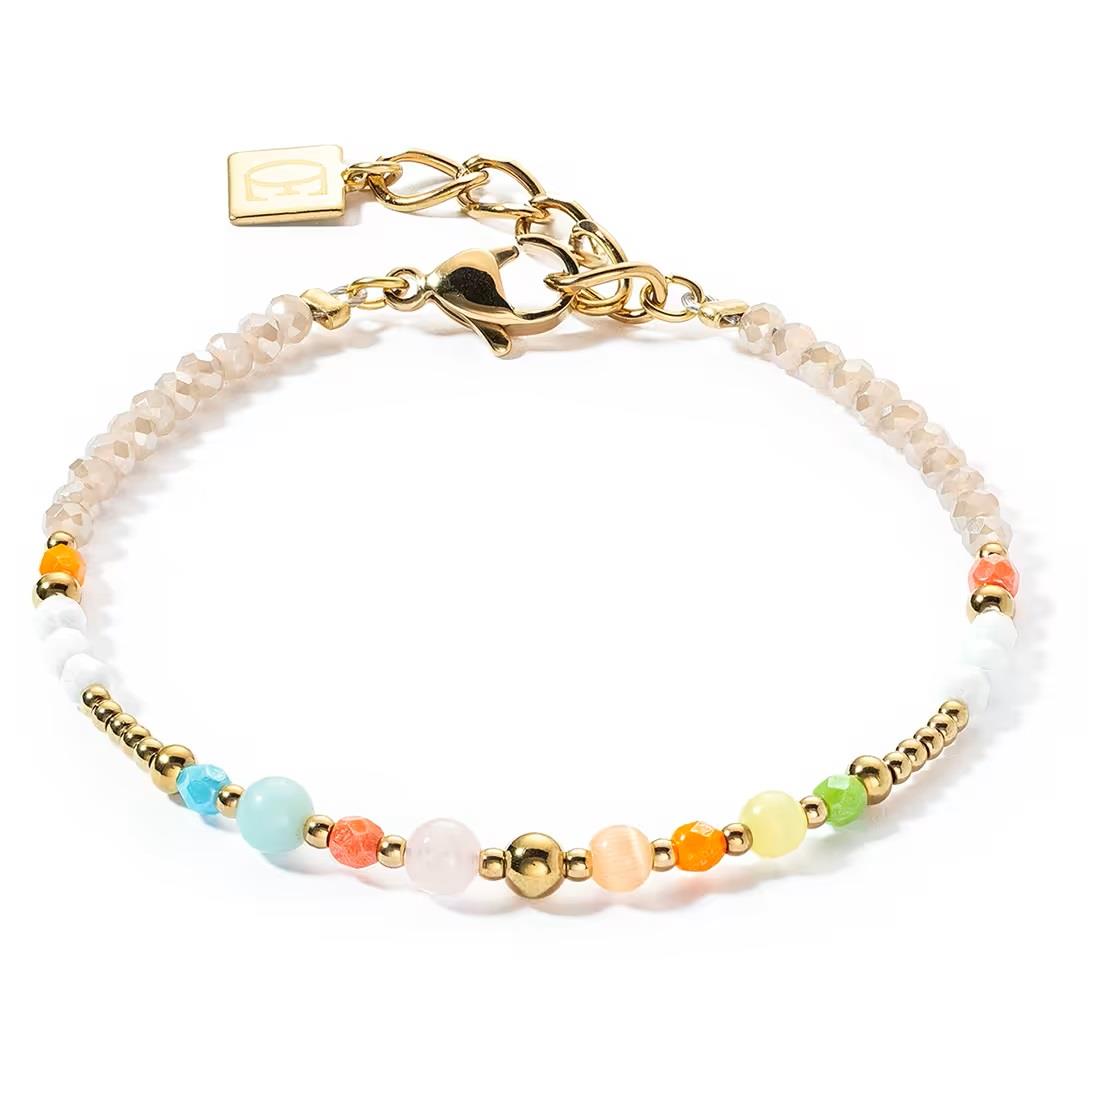 Princess pearl bracelet - COEUR DE LION